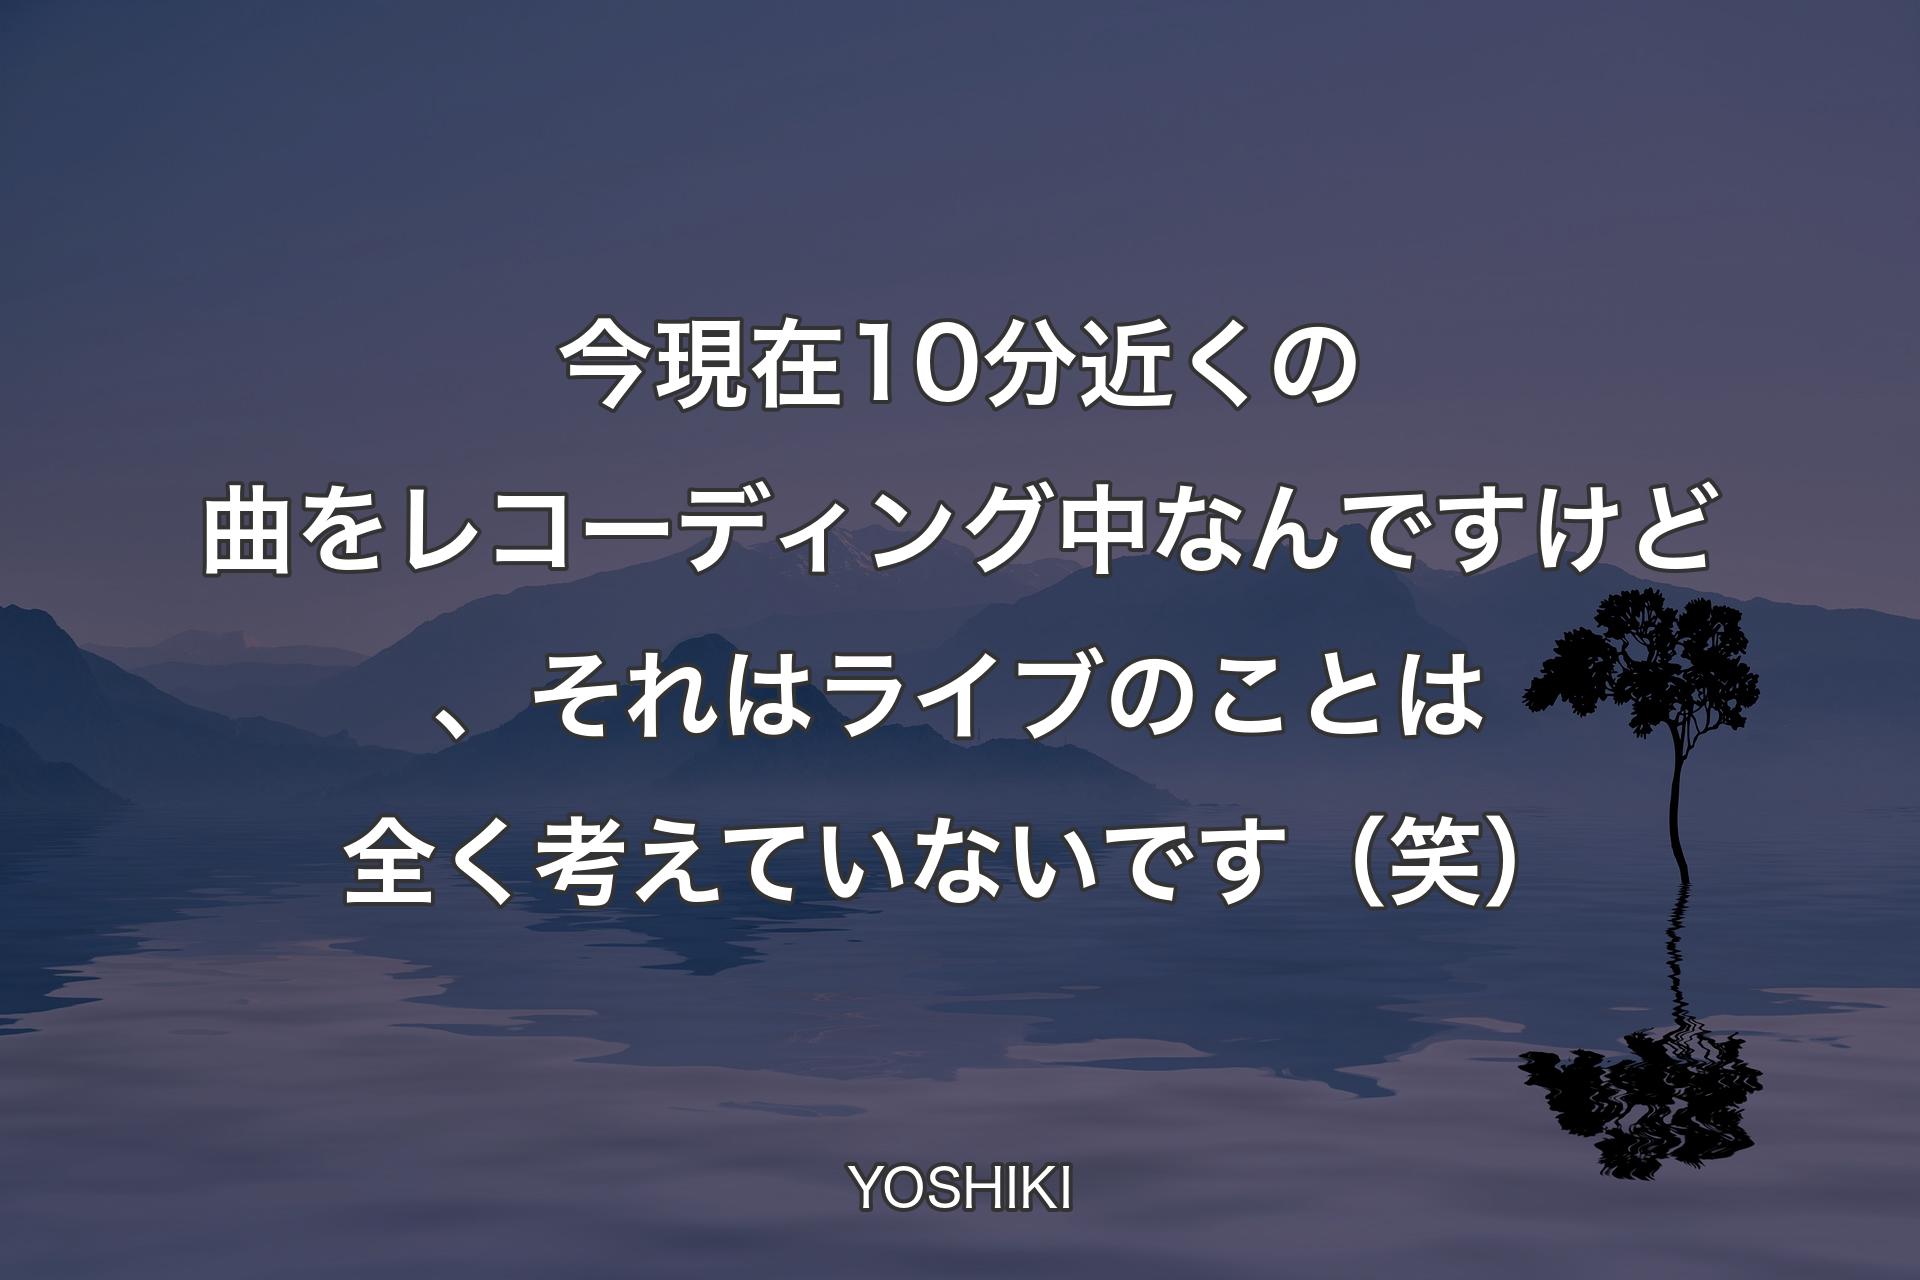 【背景4】今現在10分近くの曲をレコーディング中なんですけど、それはライブのことは全く考えていないです（笑） - YOSHIKI